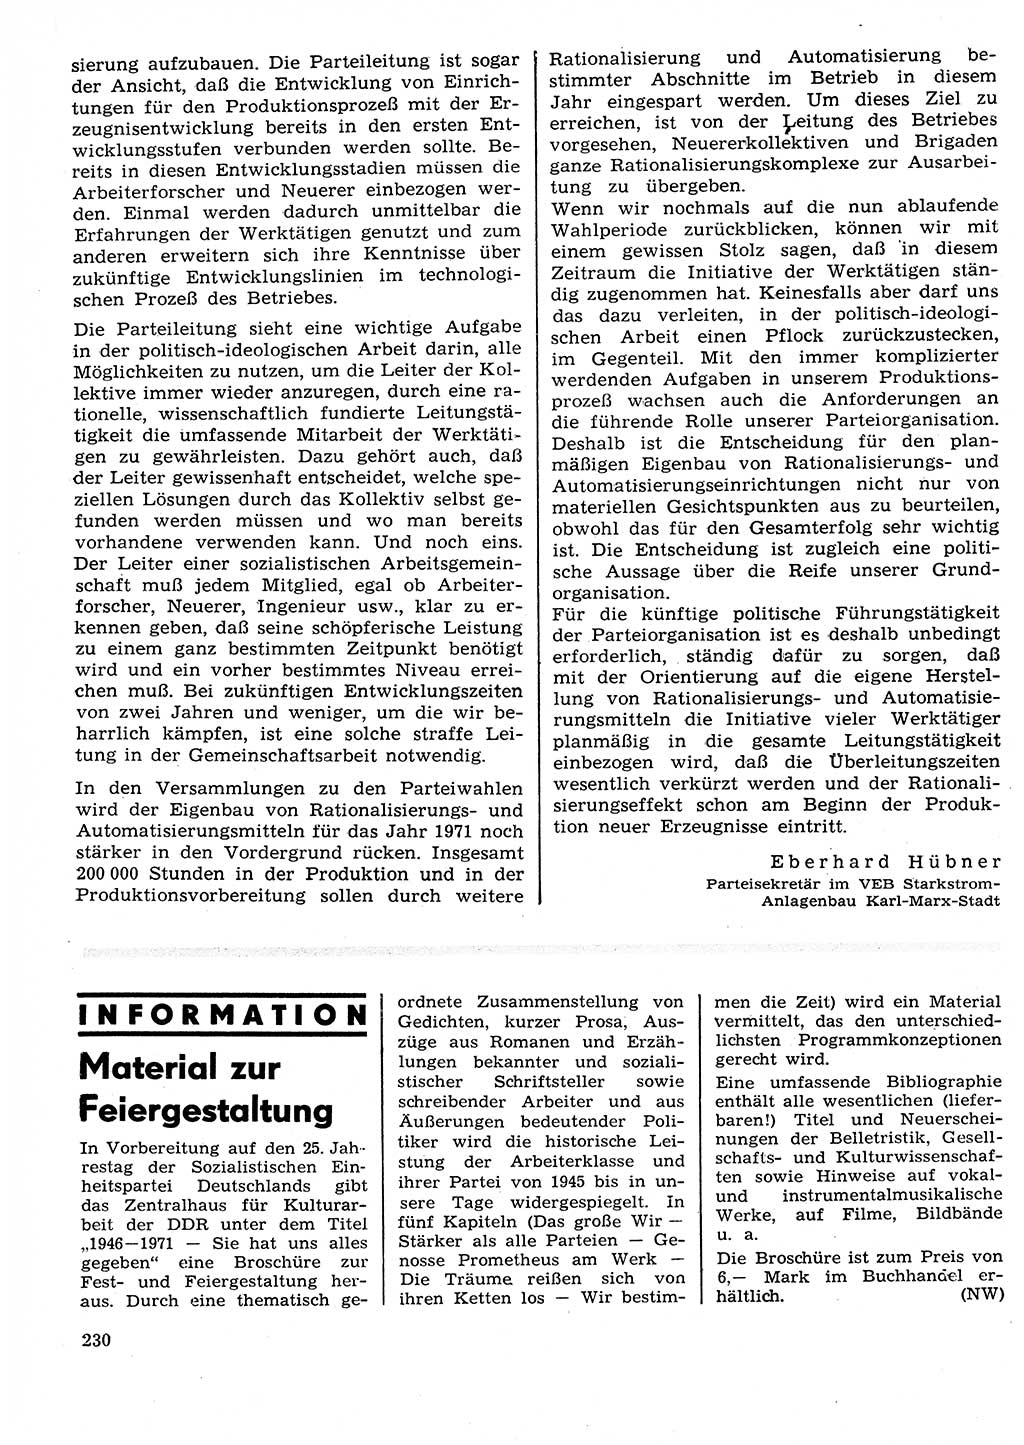 Neuer Weg (NW), Organ des Zentralkomitees (ZK) der SED (Sozialistische Einheitspartei Deutschlands) für Fragen des Parteilebens, 26. Jahrgang [Deutsche Demokratische Republik (DDR)] 1971, Seite 230 (NW ZK SED DDR 1971, S. 230)